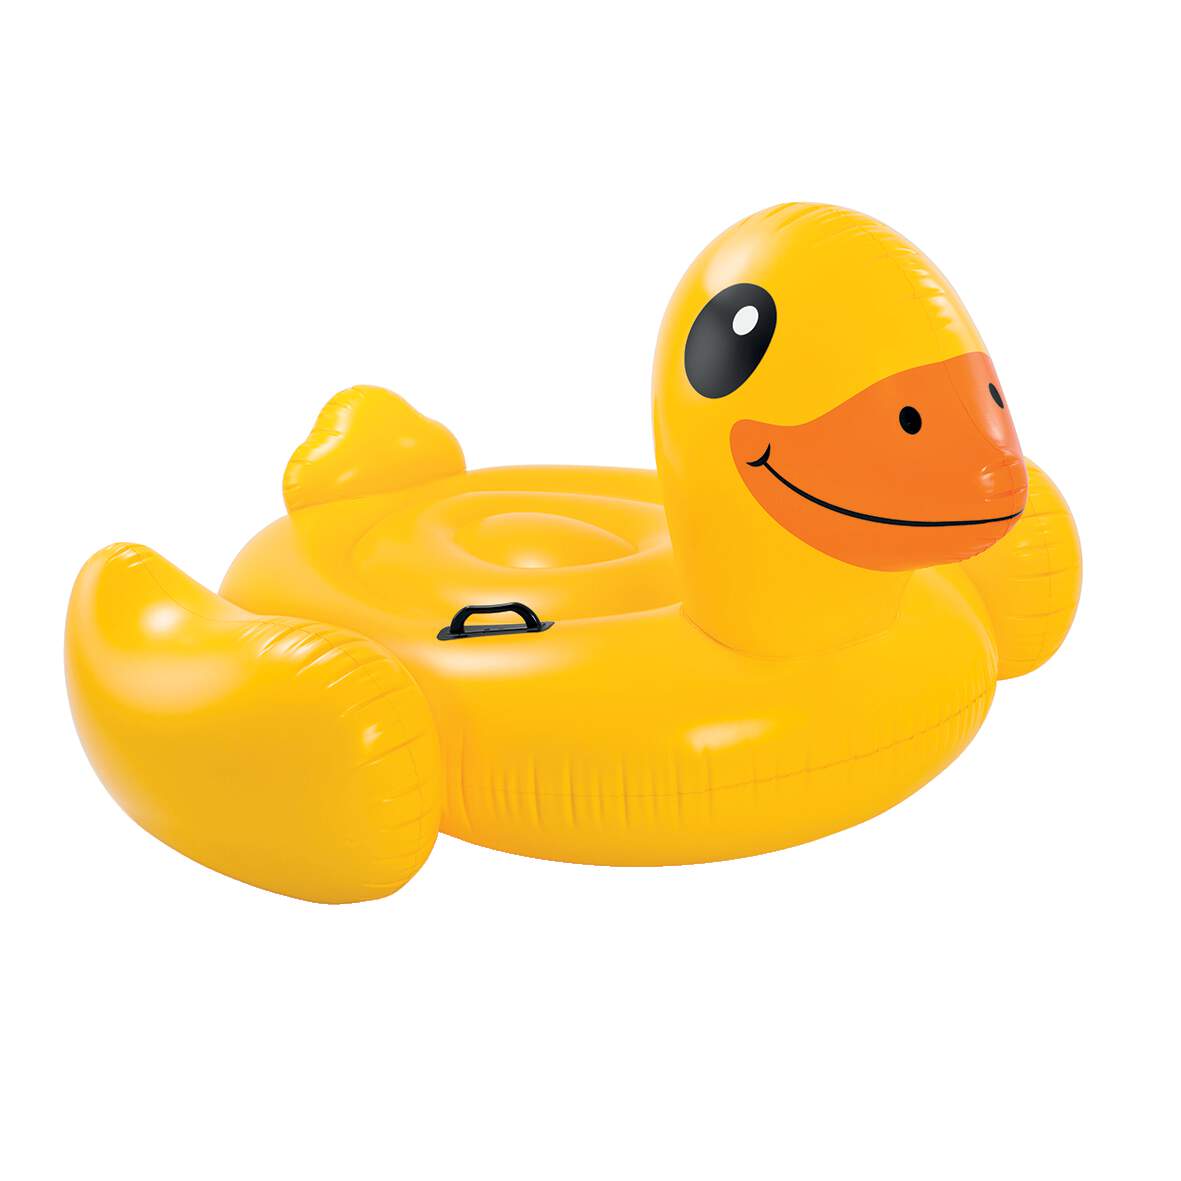 1233562 - Schwimmtier Yellow Duck Ride On 147x147x81cm